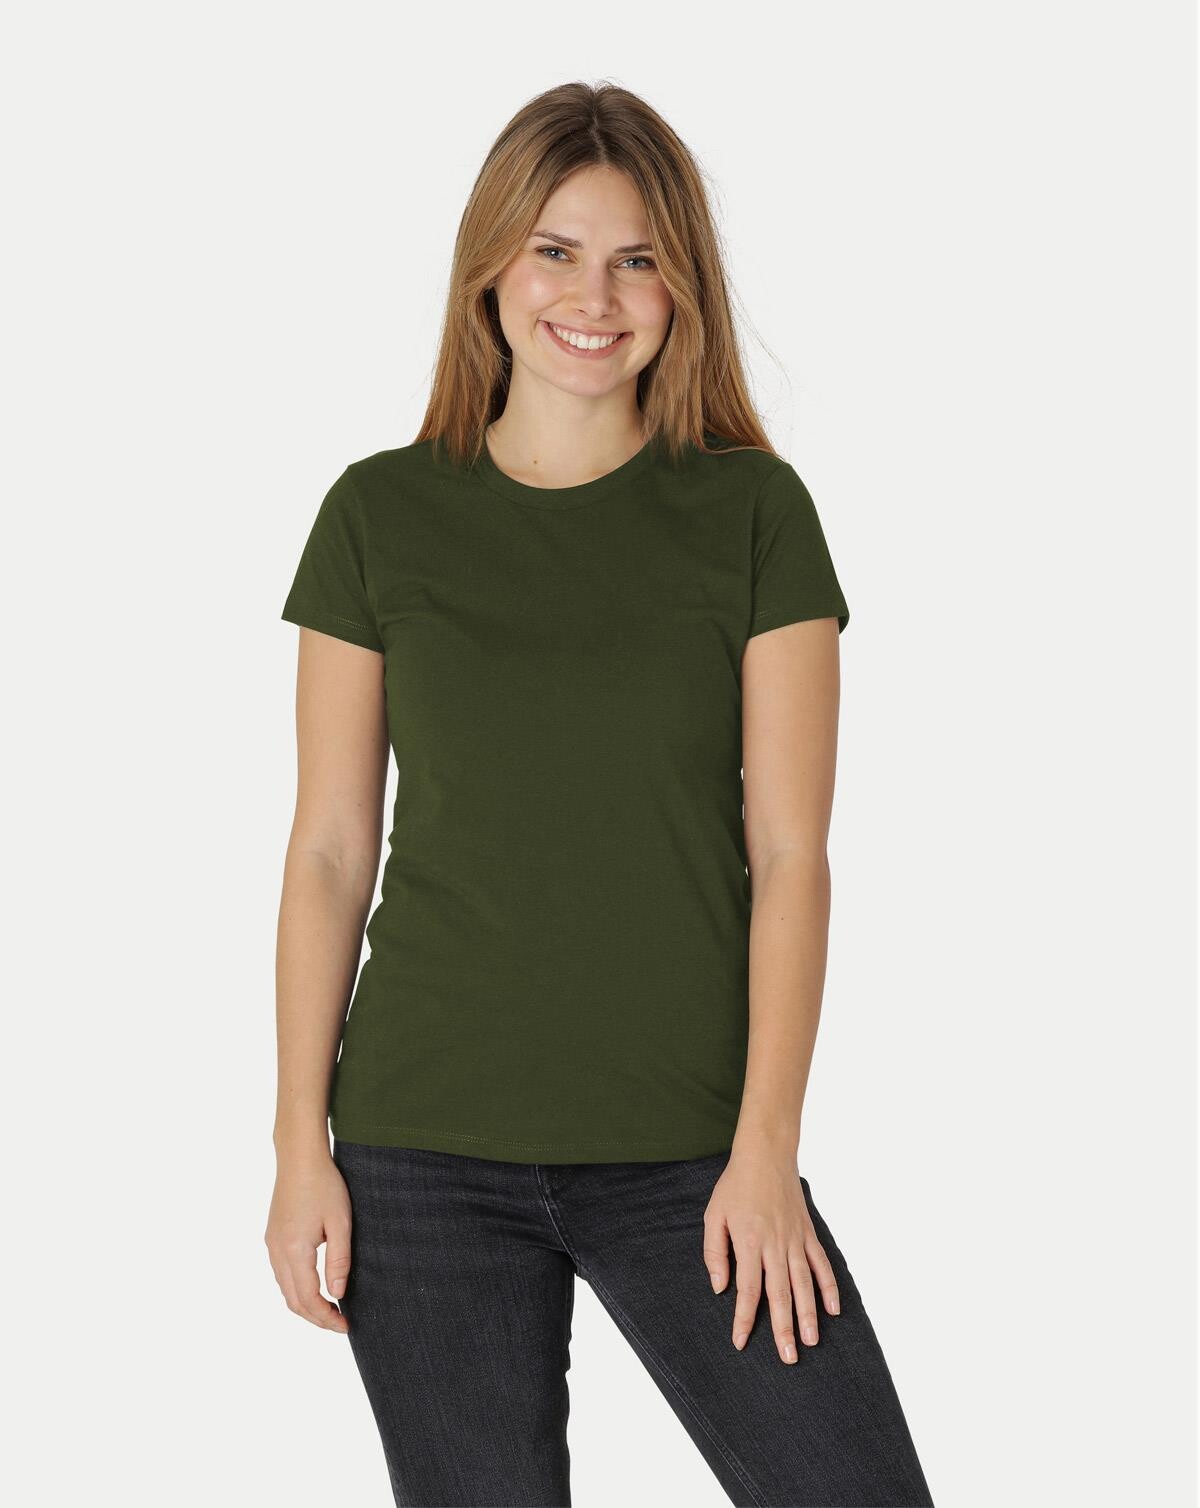 Neutral Økologisk Dame Tætsiddende T-Shirt (Oliven, 2XL)